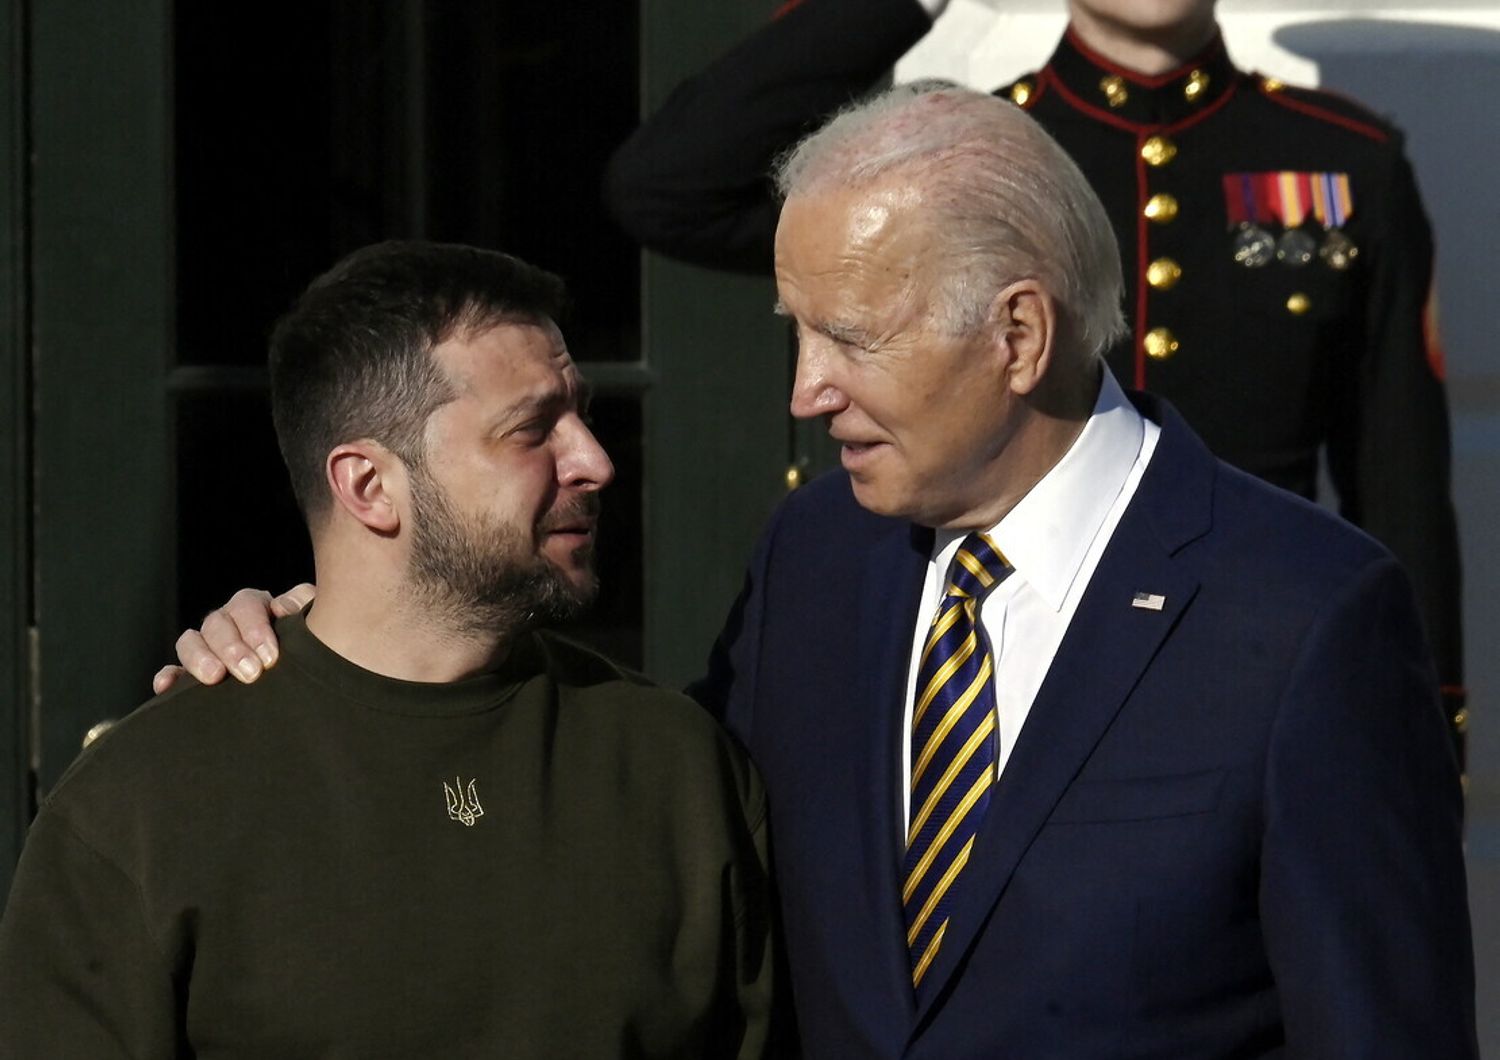 Il presidente degli Stati Uniti Joe Biden d&agrave; il benvenuto al leader ucraino Volodymyr Zelensky&nbsp;